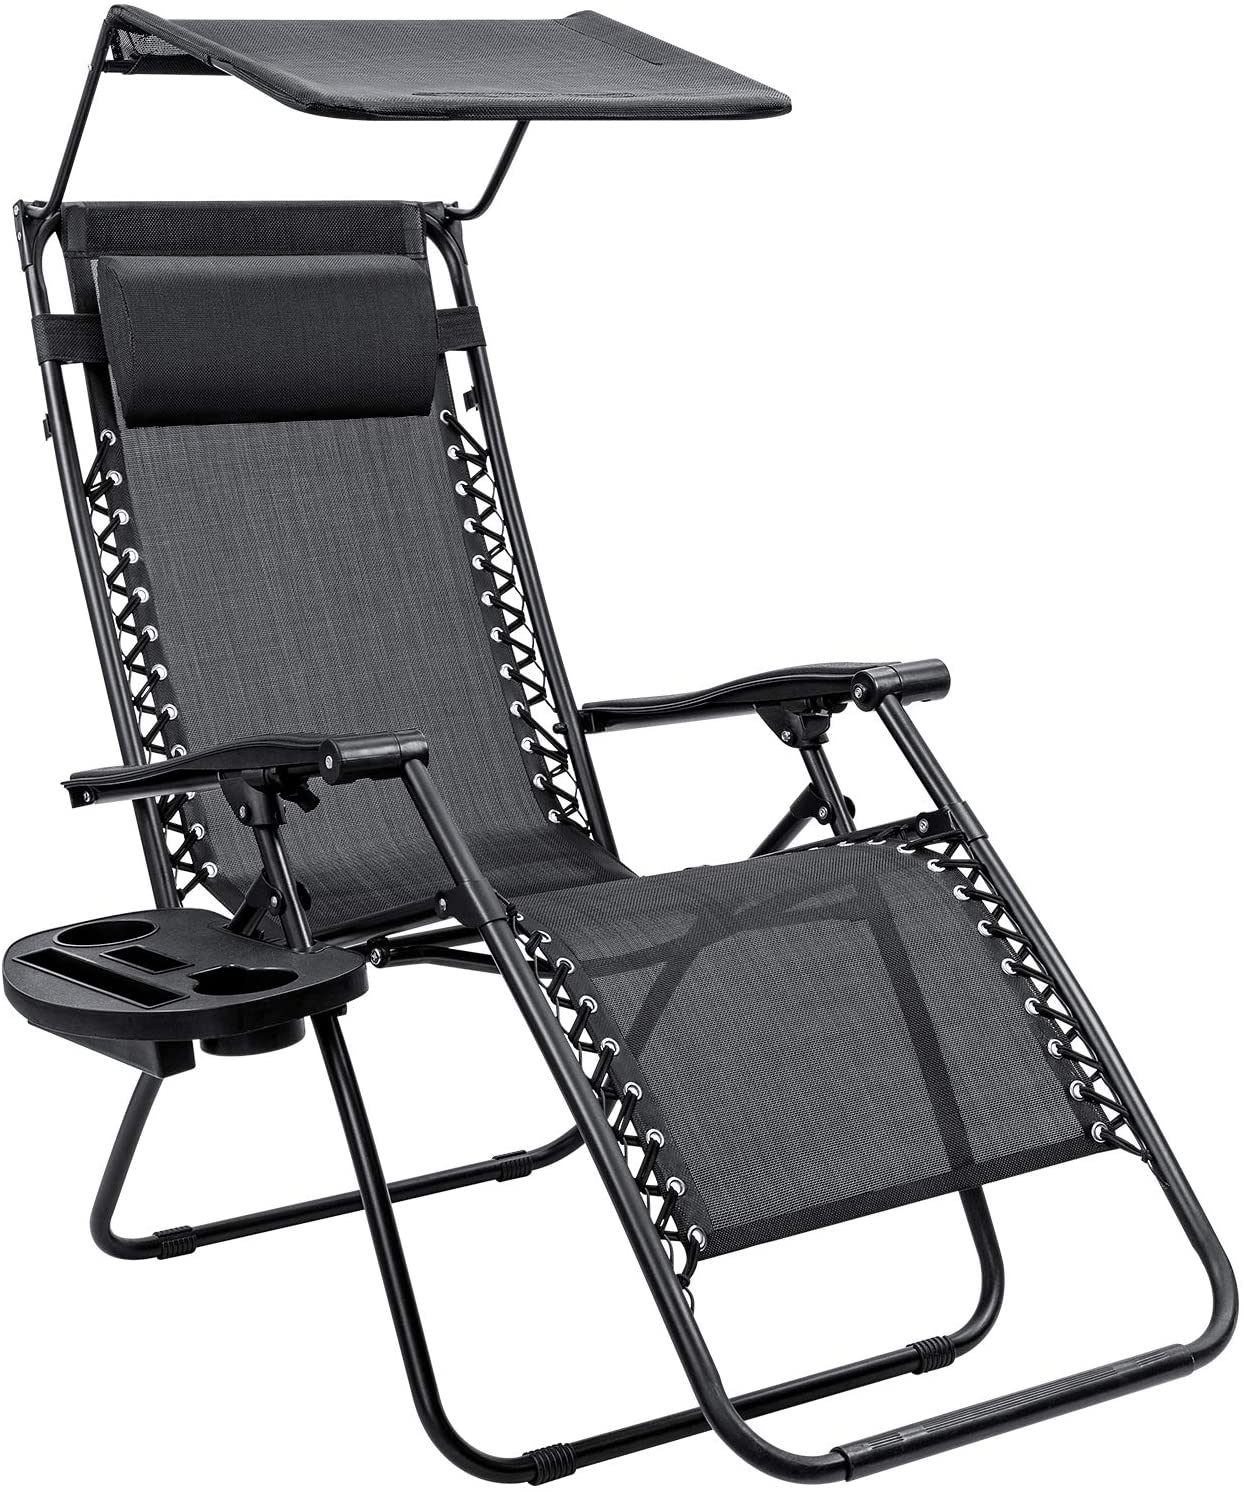 Homall Zero Gravity Chair Patio Lawn Chair Lounge Chair